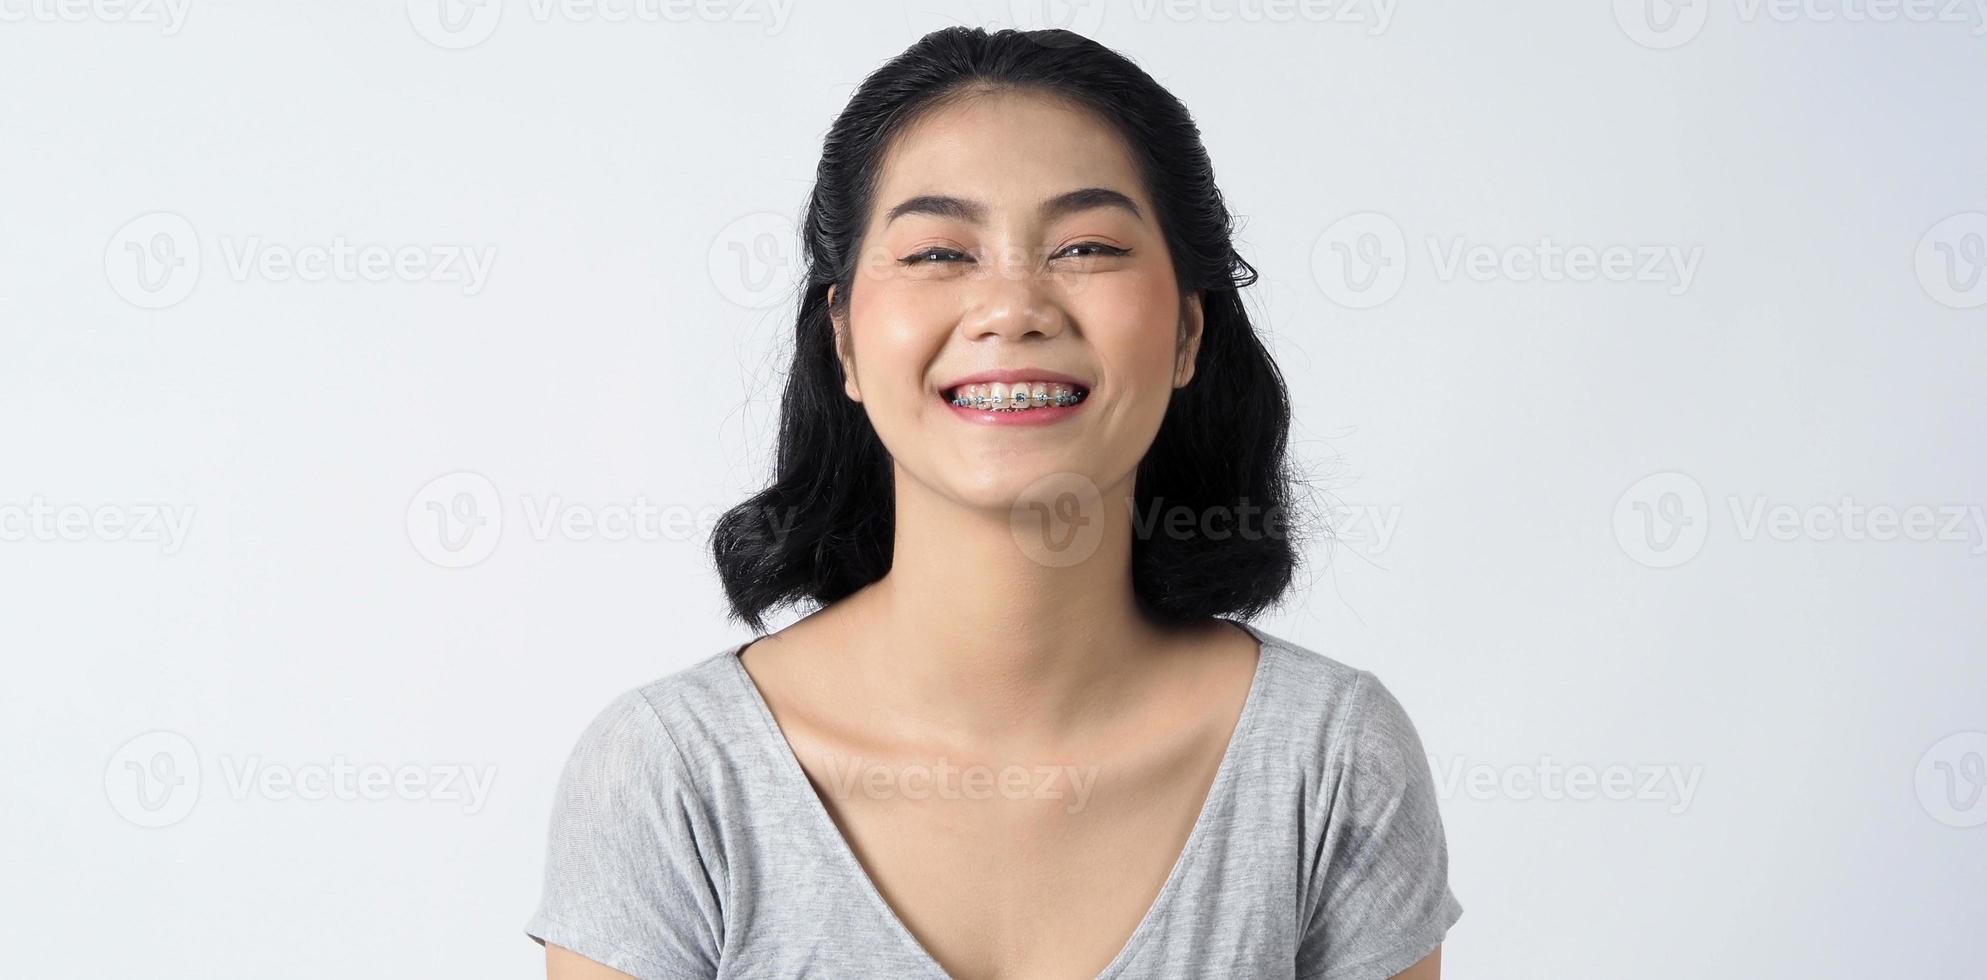 appareil dentaire d'une femme asiatique adolescente portant des dents et des lentilles de contact photo